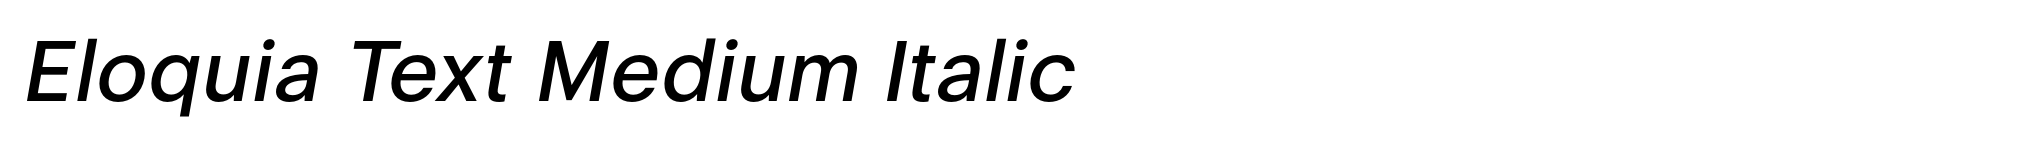 Eloquia Text Medium Italic image